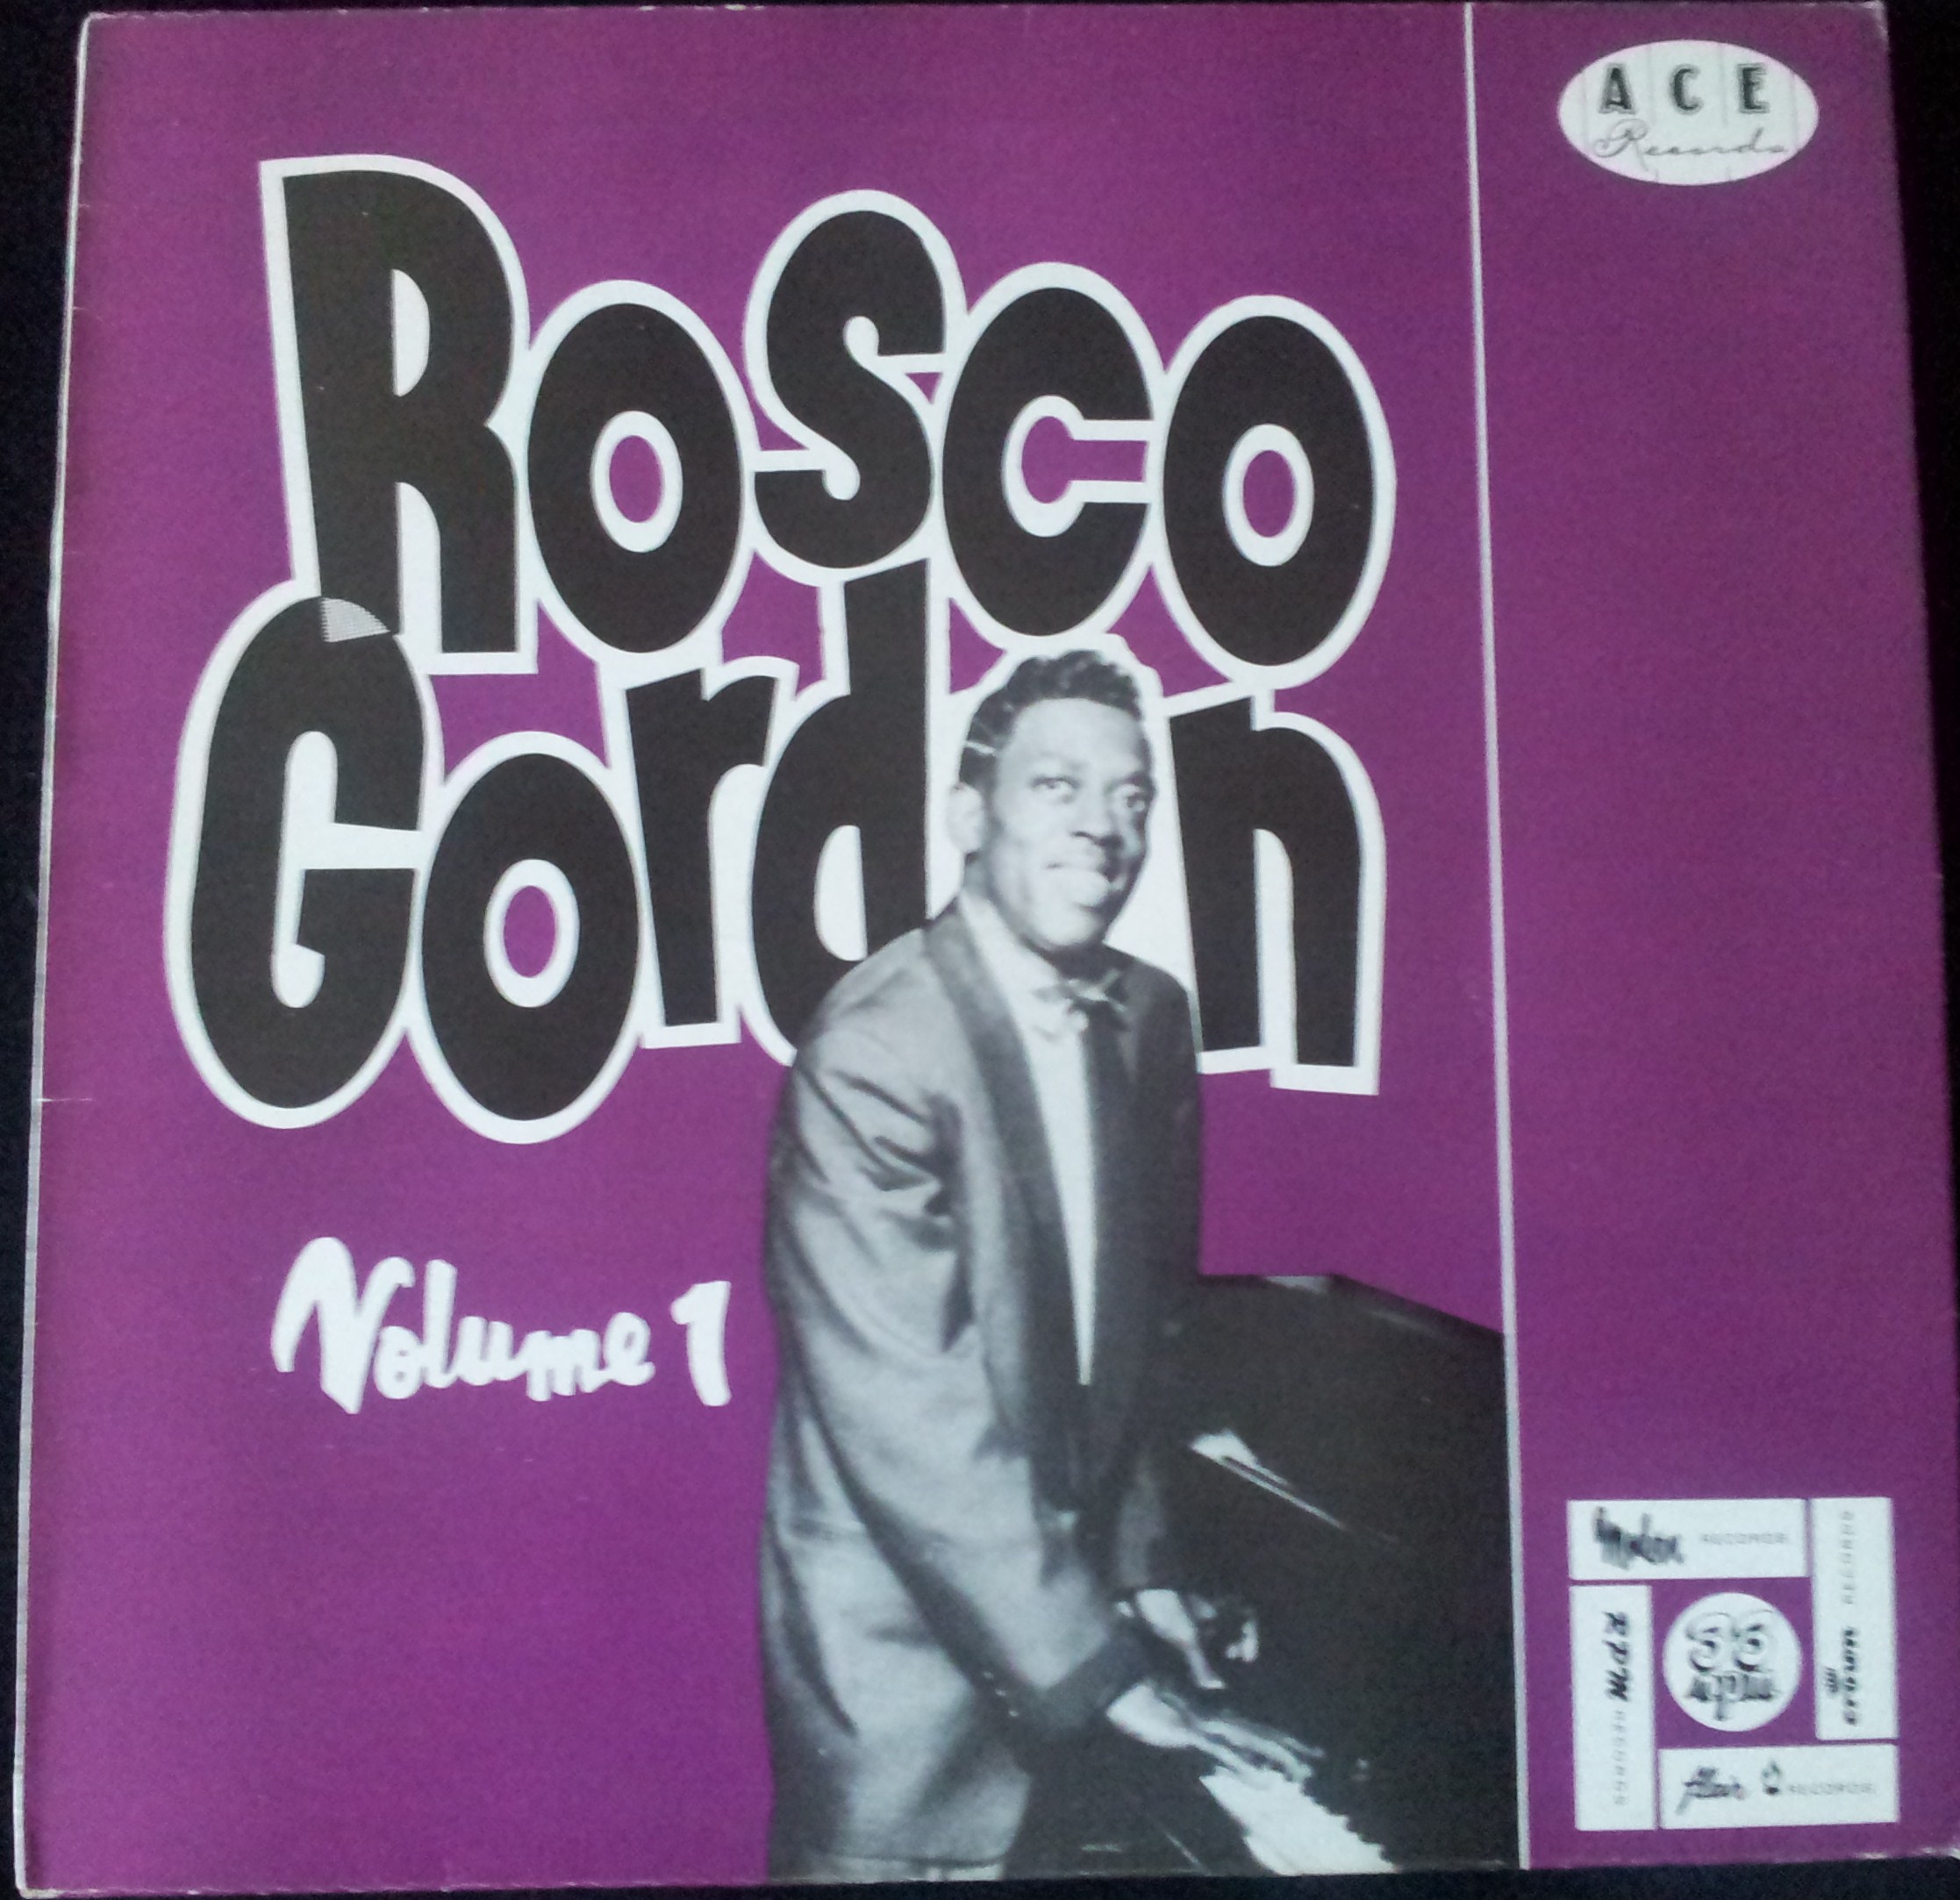 GORDON ROSCO